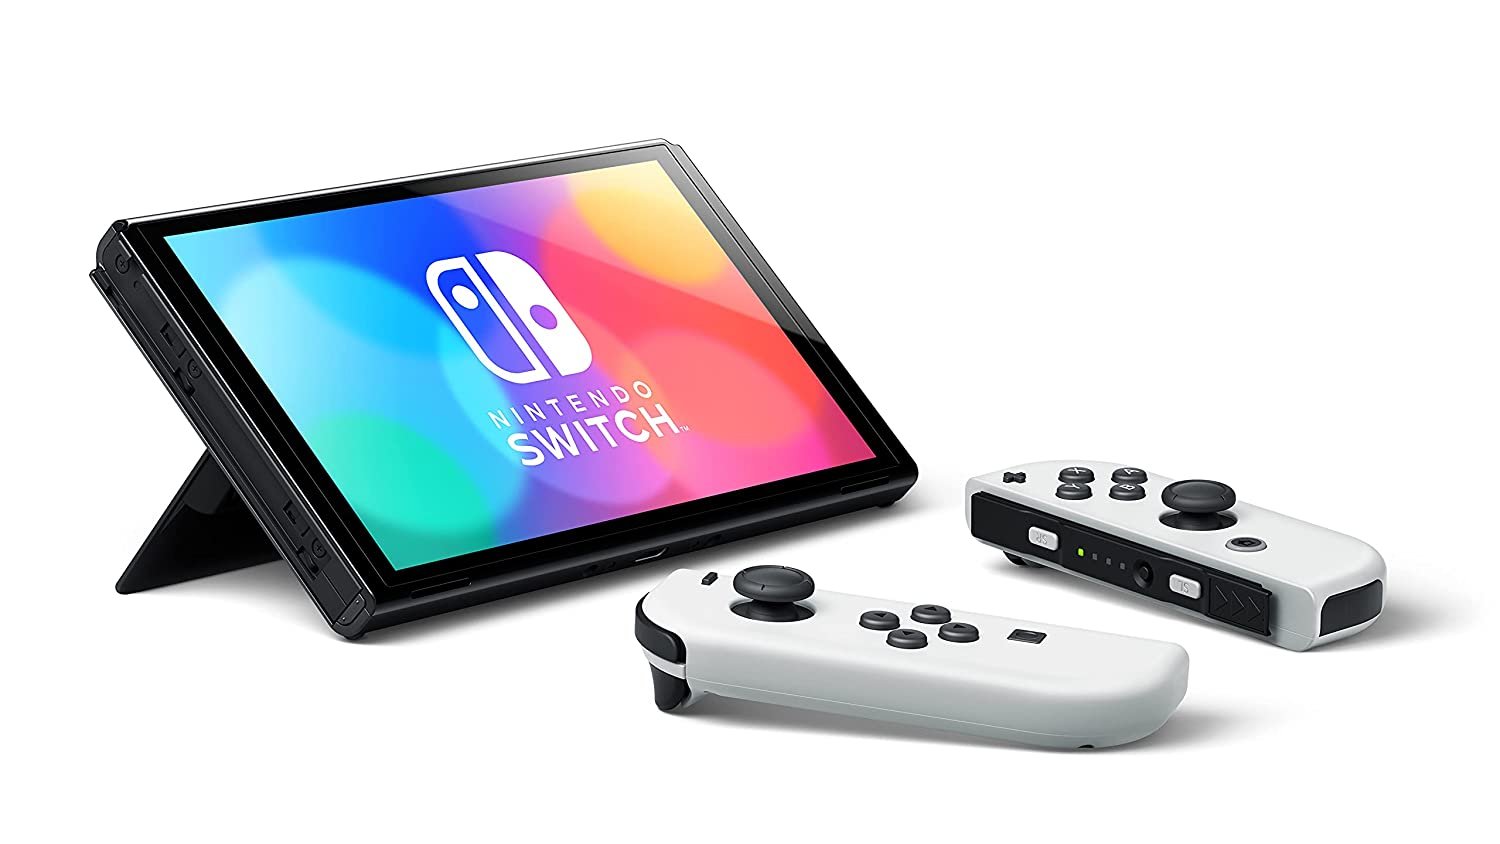 Consola Nintendo Switch OLED - Blanco